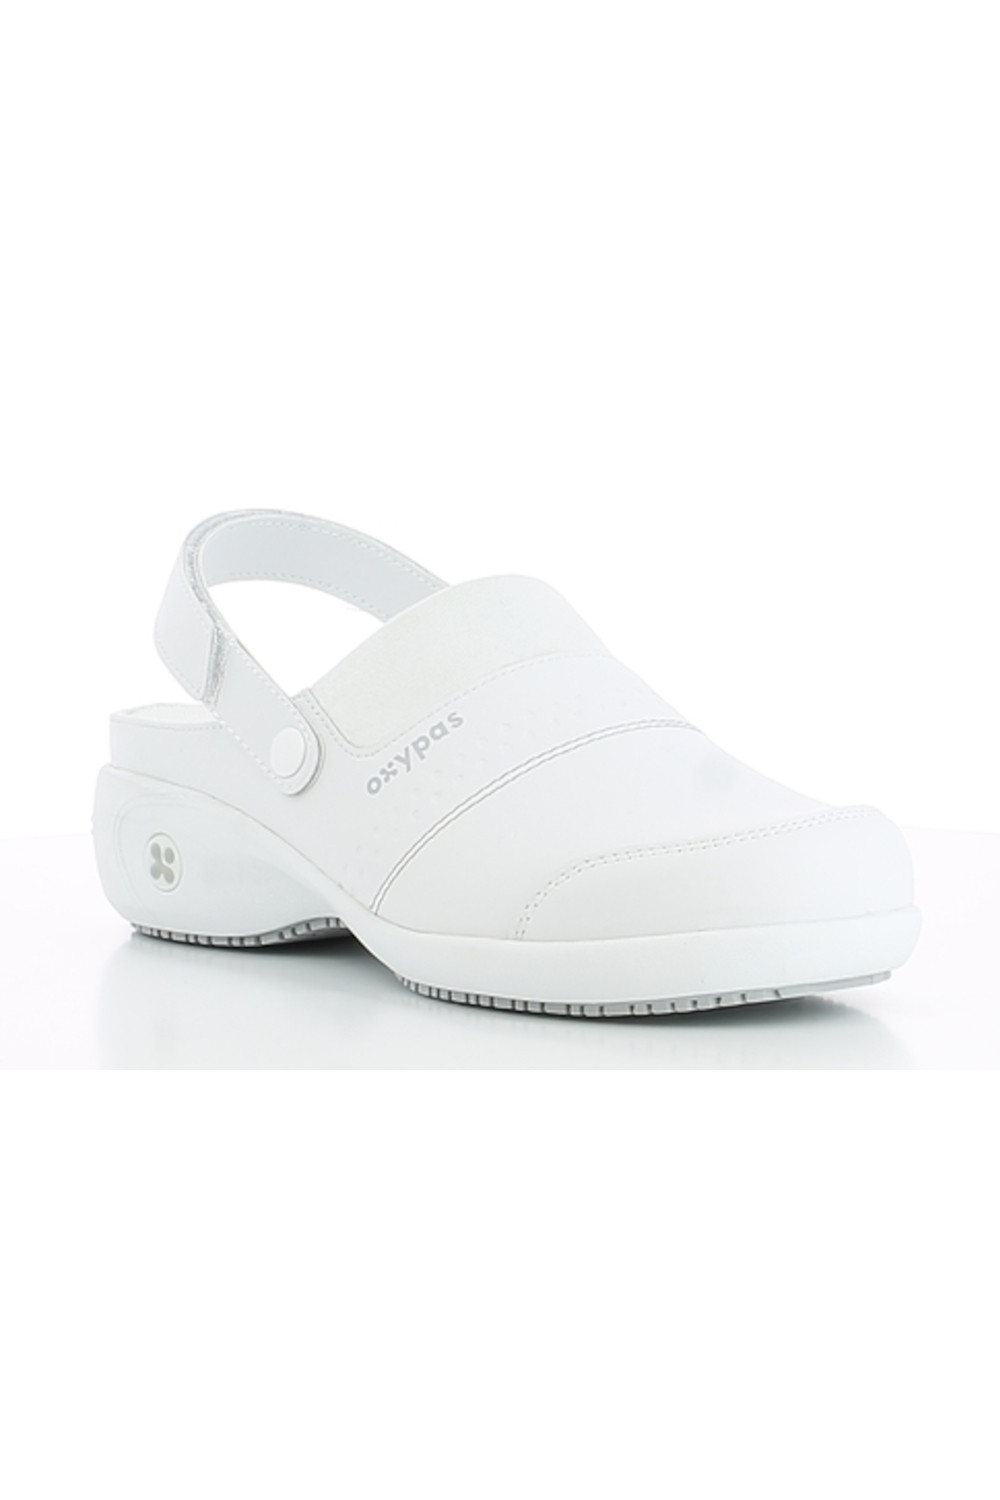 Buty damskie medyczne SANDY OXYPAS obuwie biały